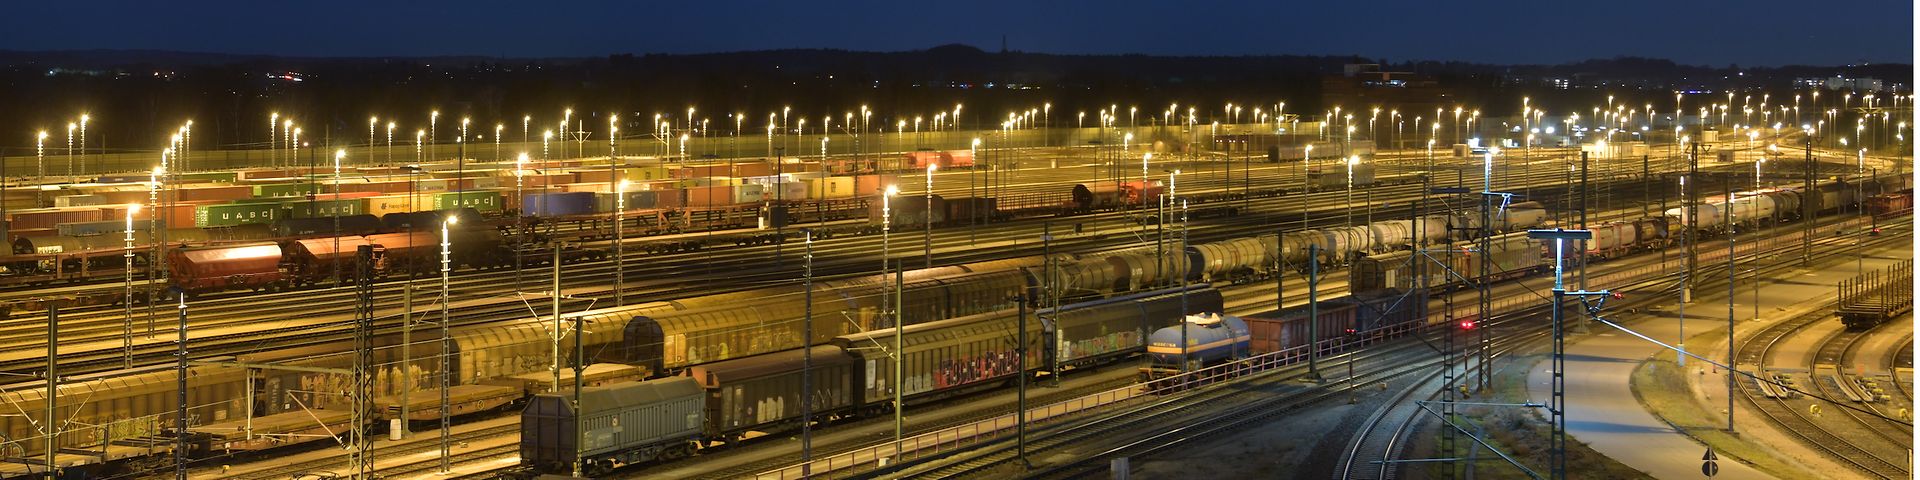 Railway tracks at night DB Cargo